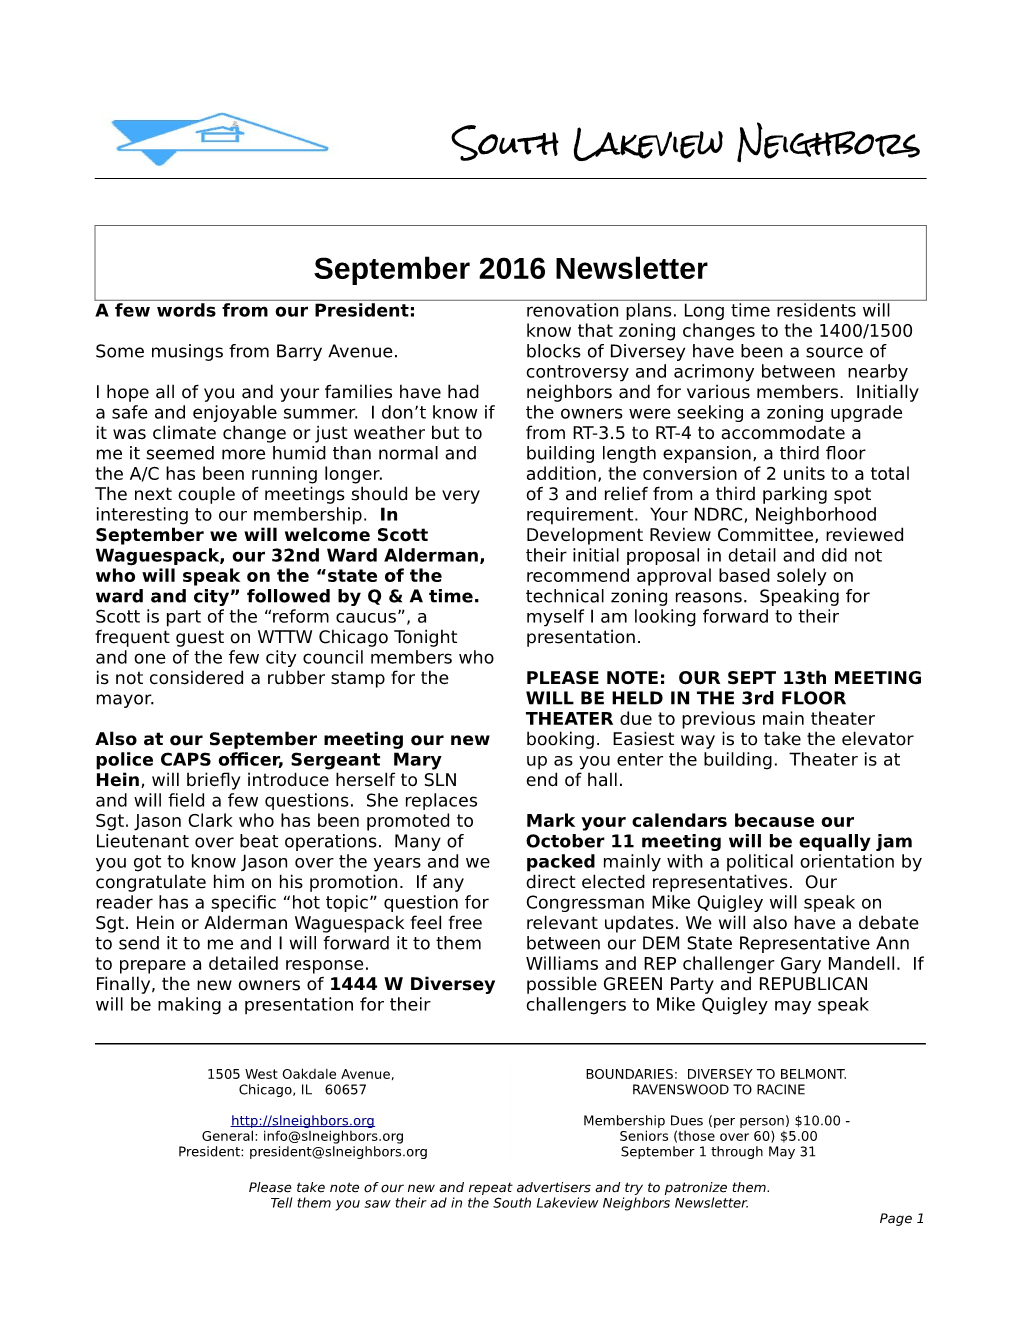 South Lakeview Neighbors September 2016 Newsletter